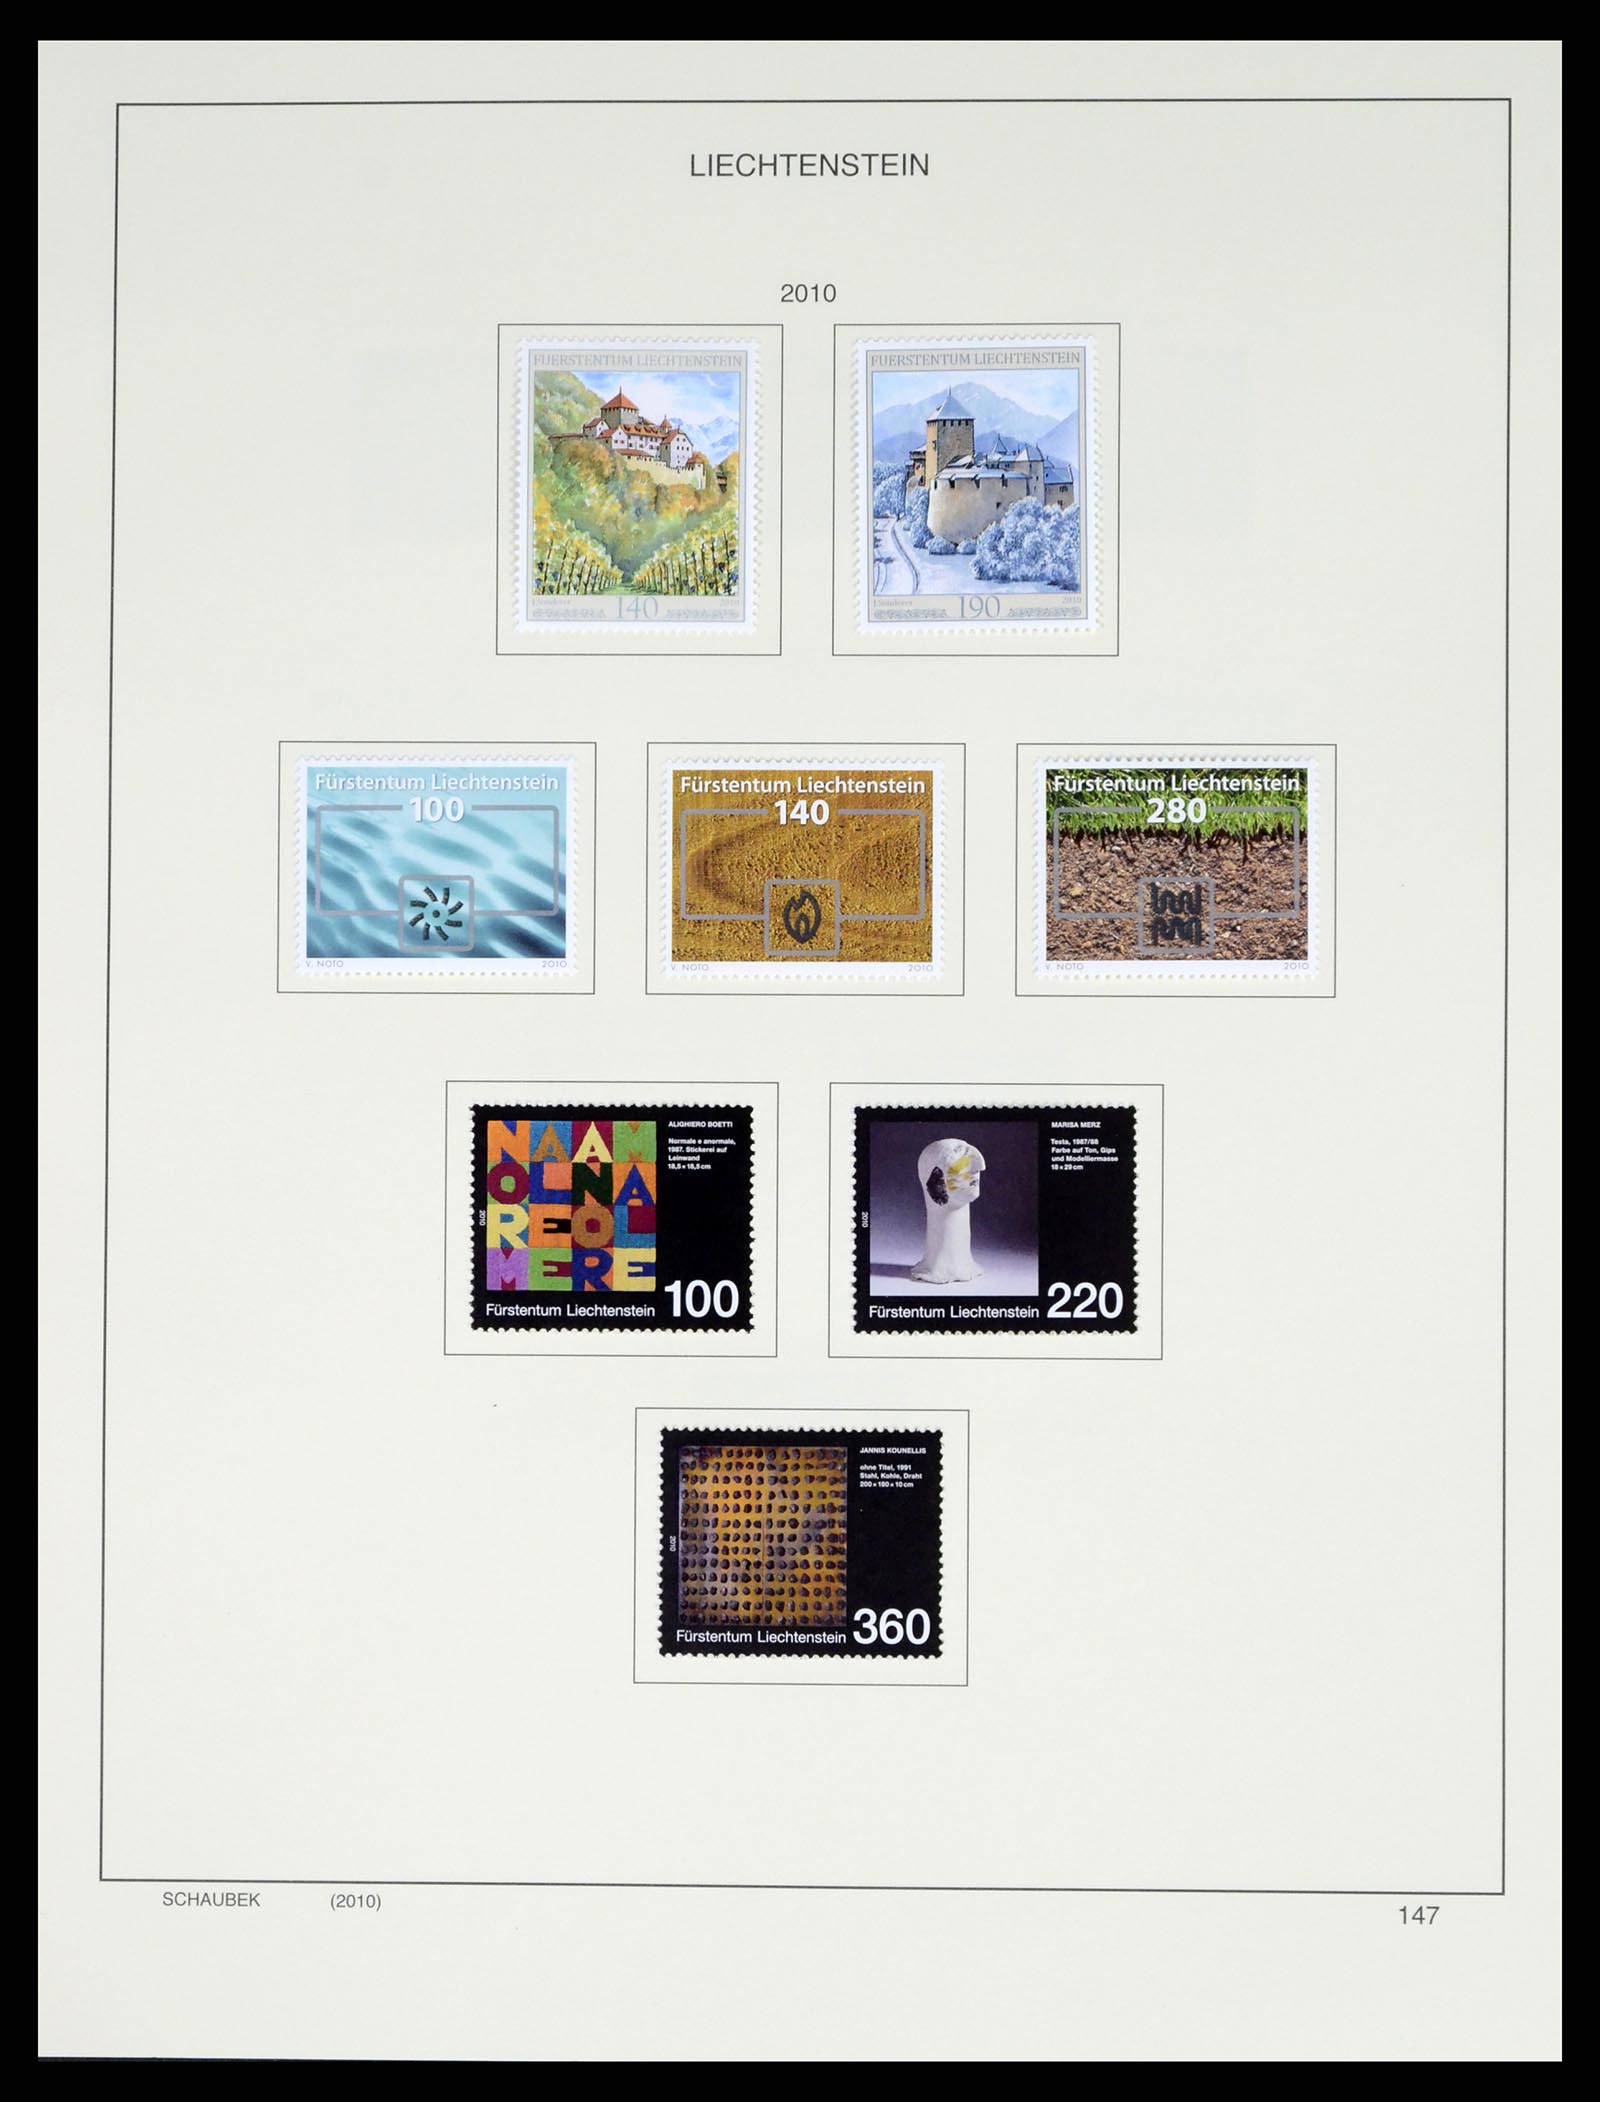 37547 173 - Stamp collection 37547 Liechtenstein 1912-2011.